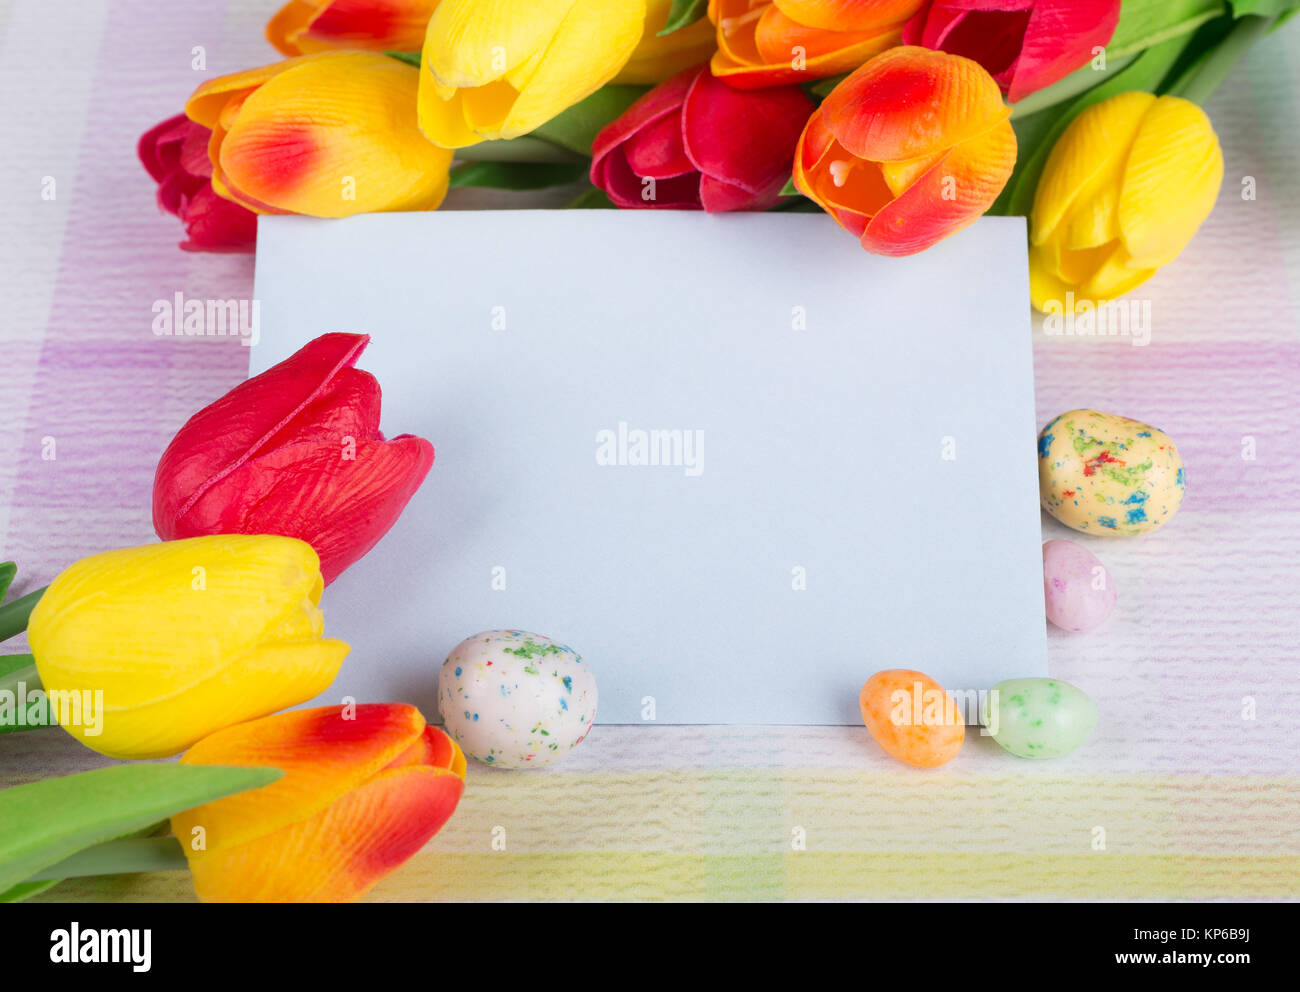 Pasqua candy e tulipani intorno ad una busta vuota su un piano portapaziente colorati Foto Stock